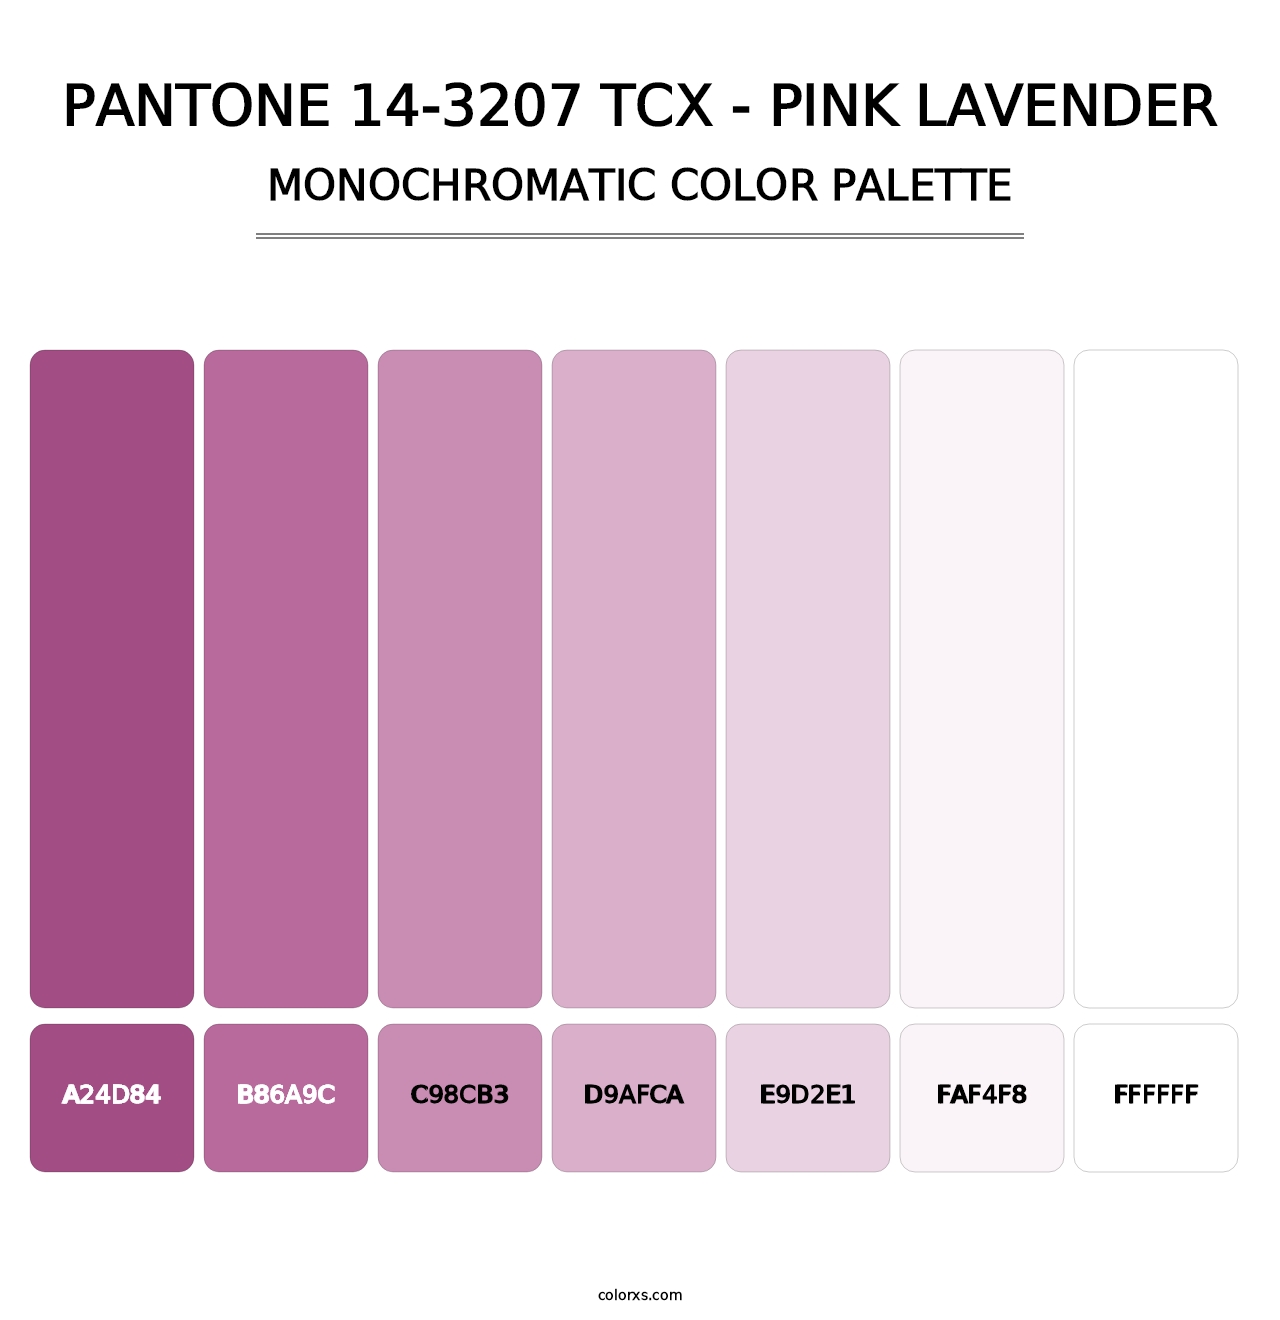 PANTONE 14-3207 TCX - Pink Lavender - Monochromatic Color Palette